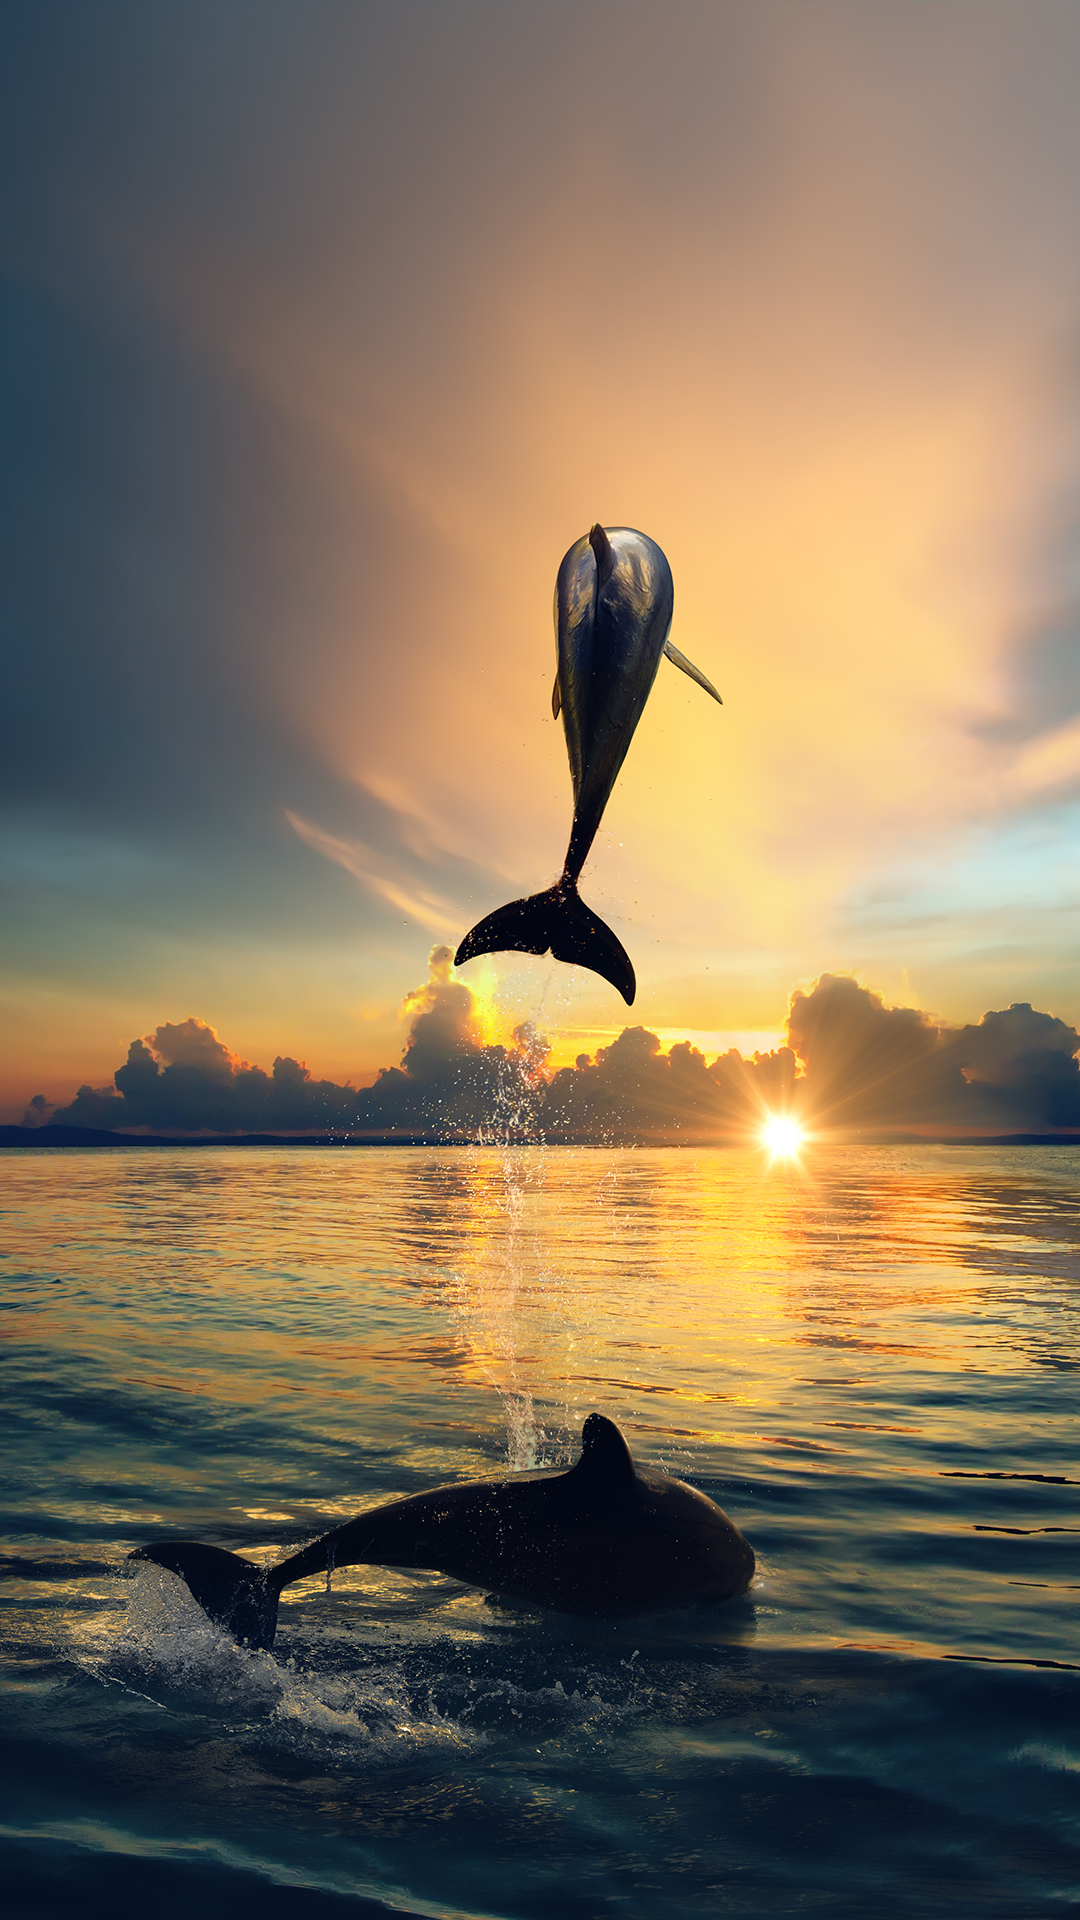 sfondi iphone delfino,delfino,delfino tursiope,mammifero marino,delfino di tursiope comune,acqua